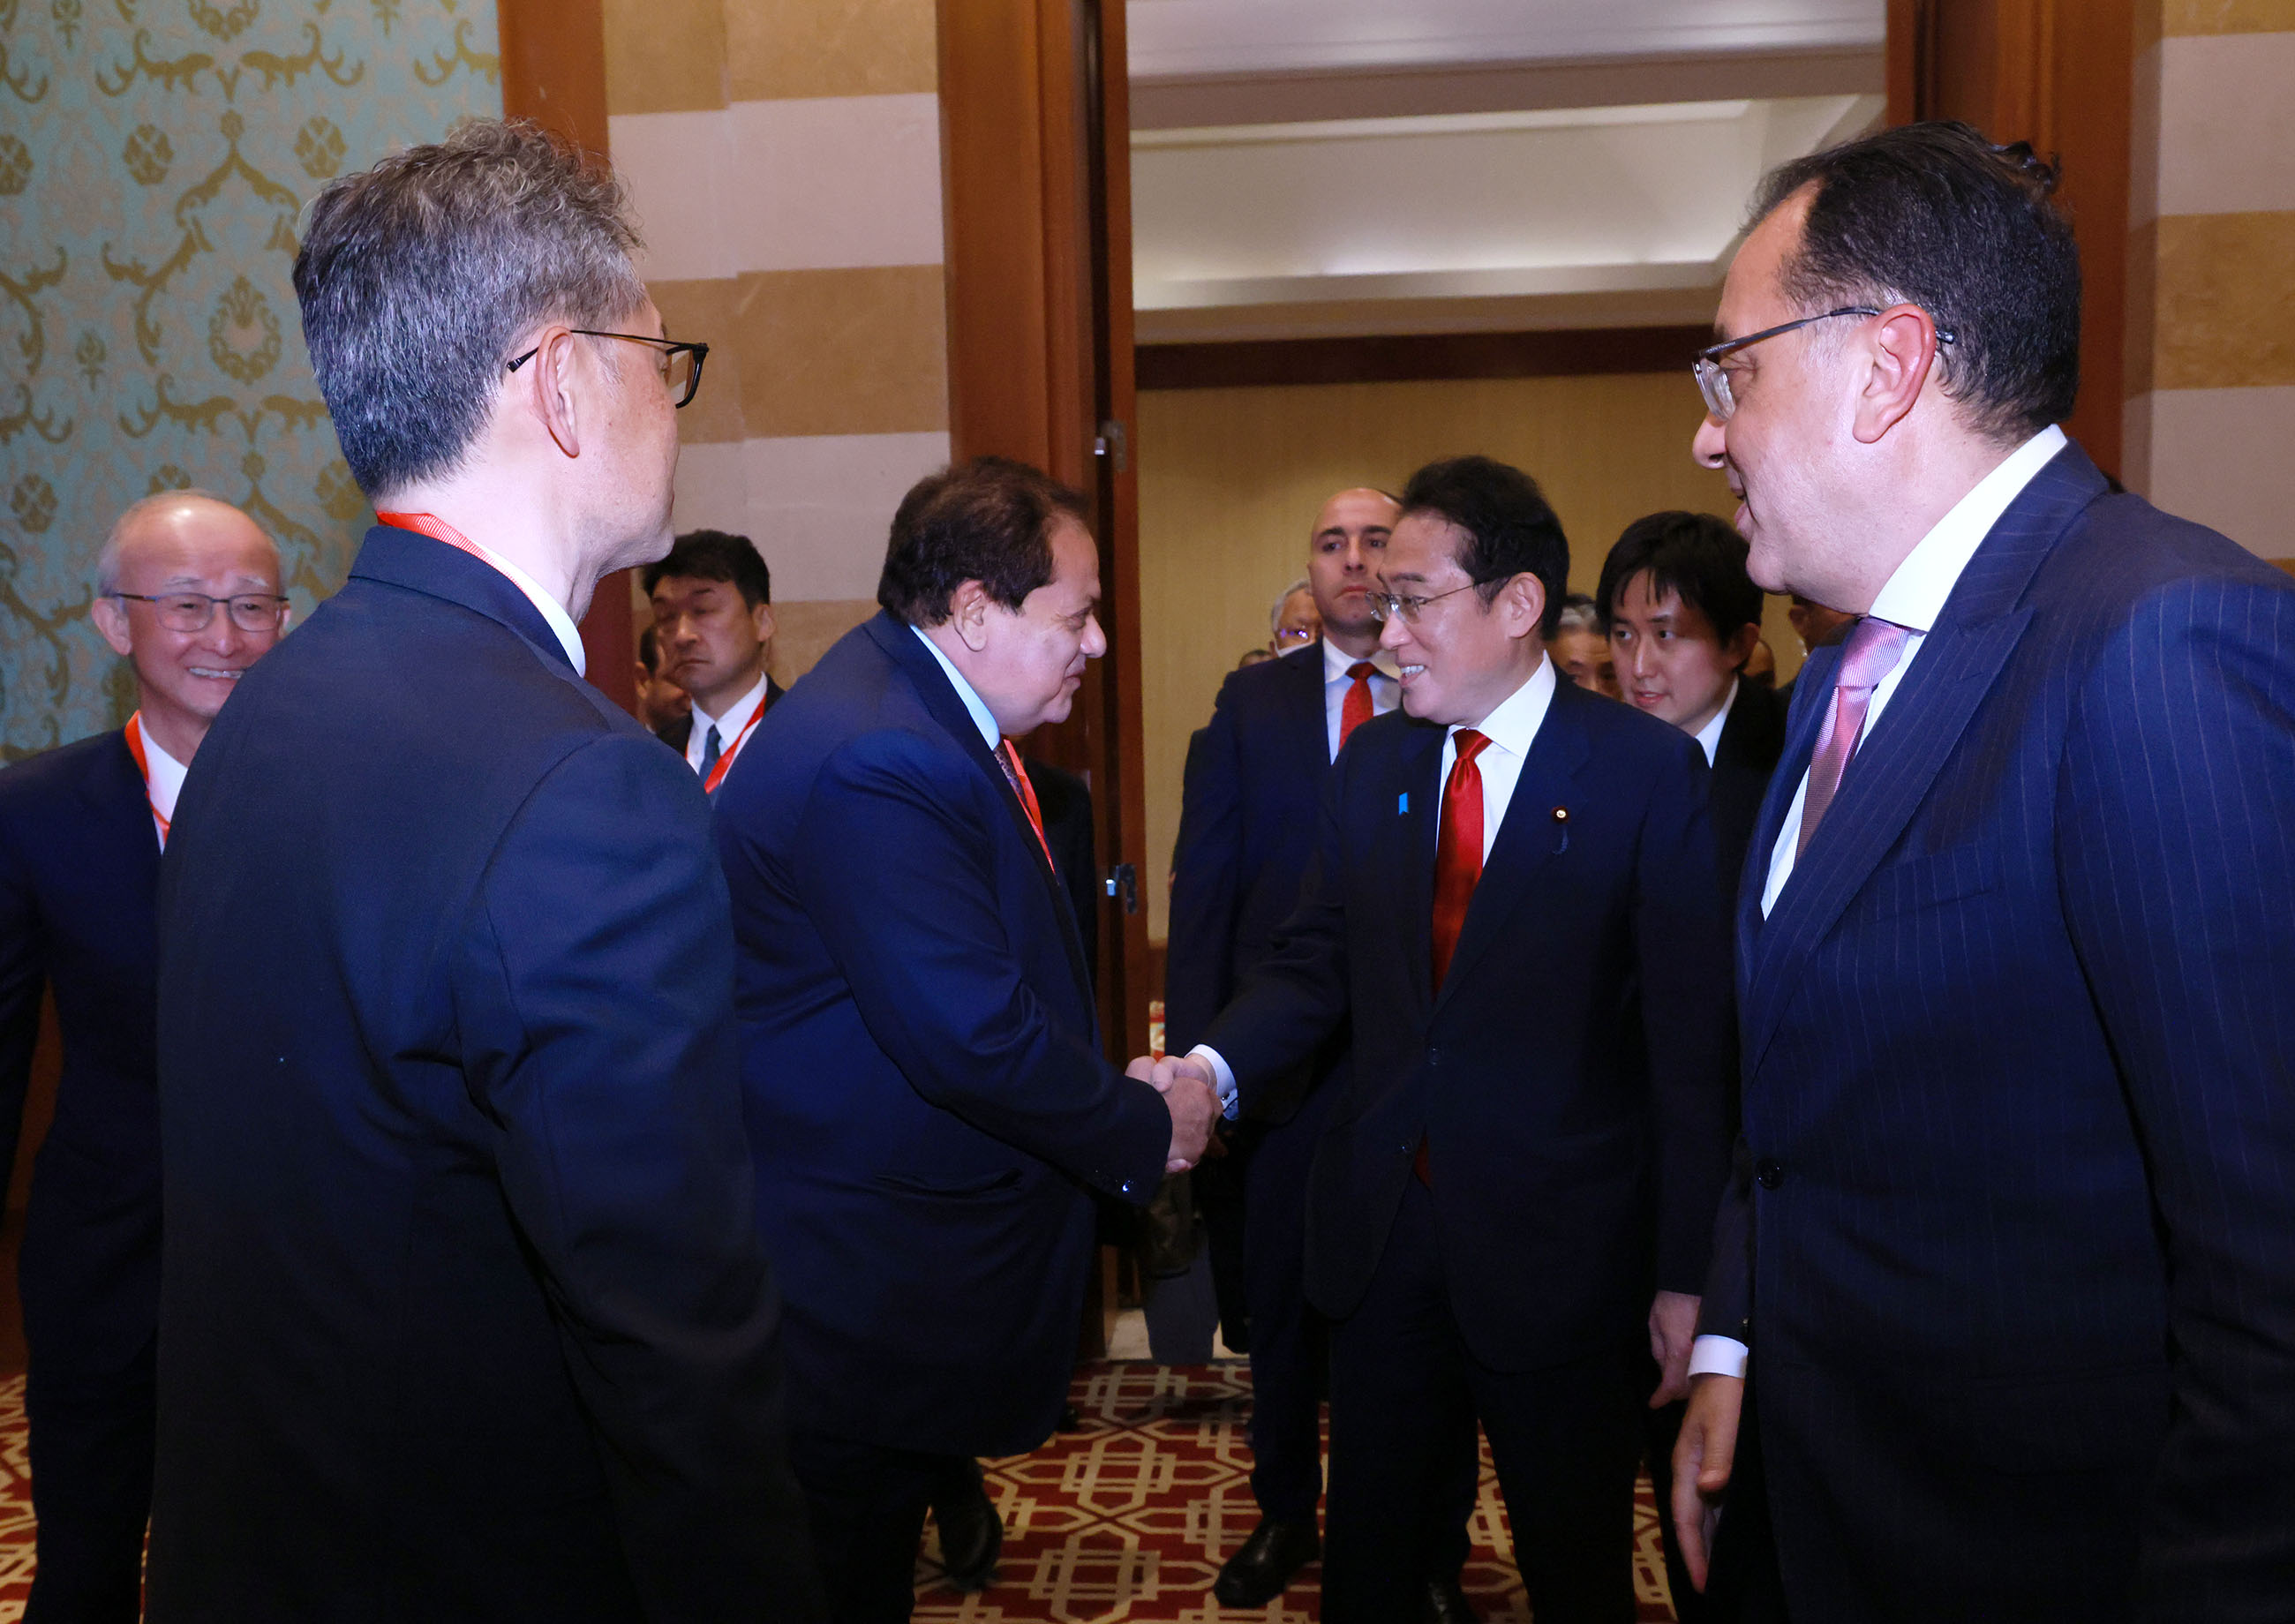 Prime Minister Kishida attending the Japan-Egypt Business Forum